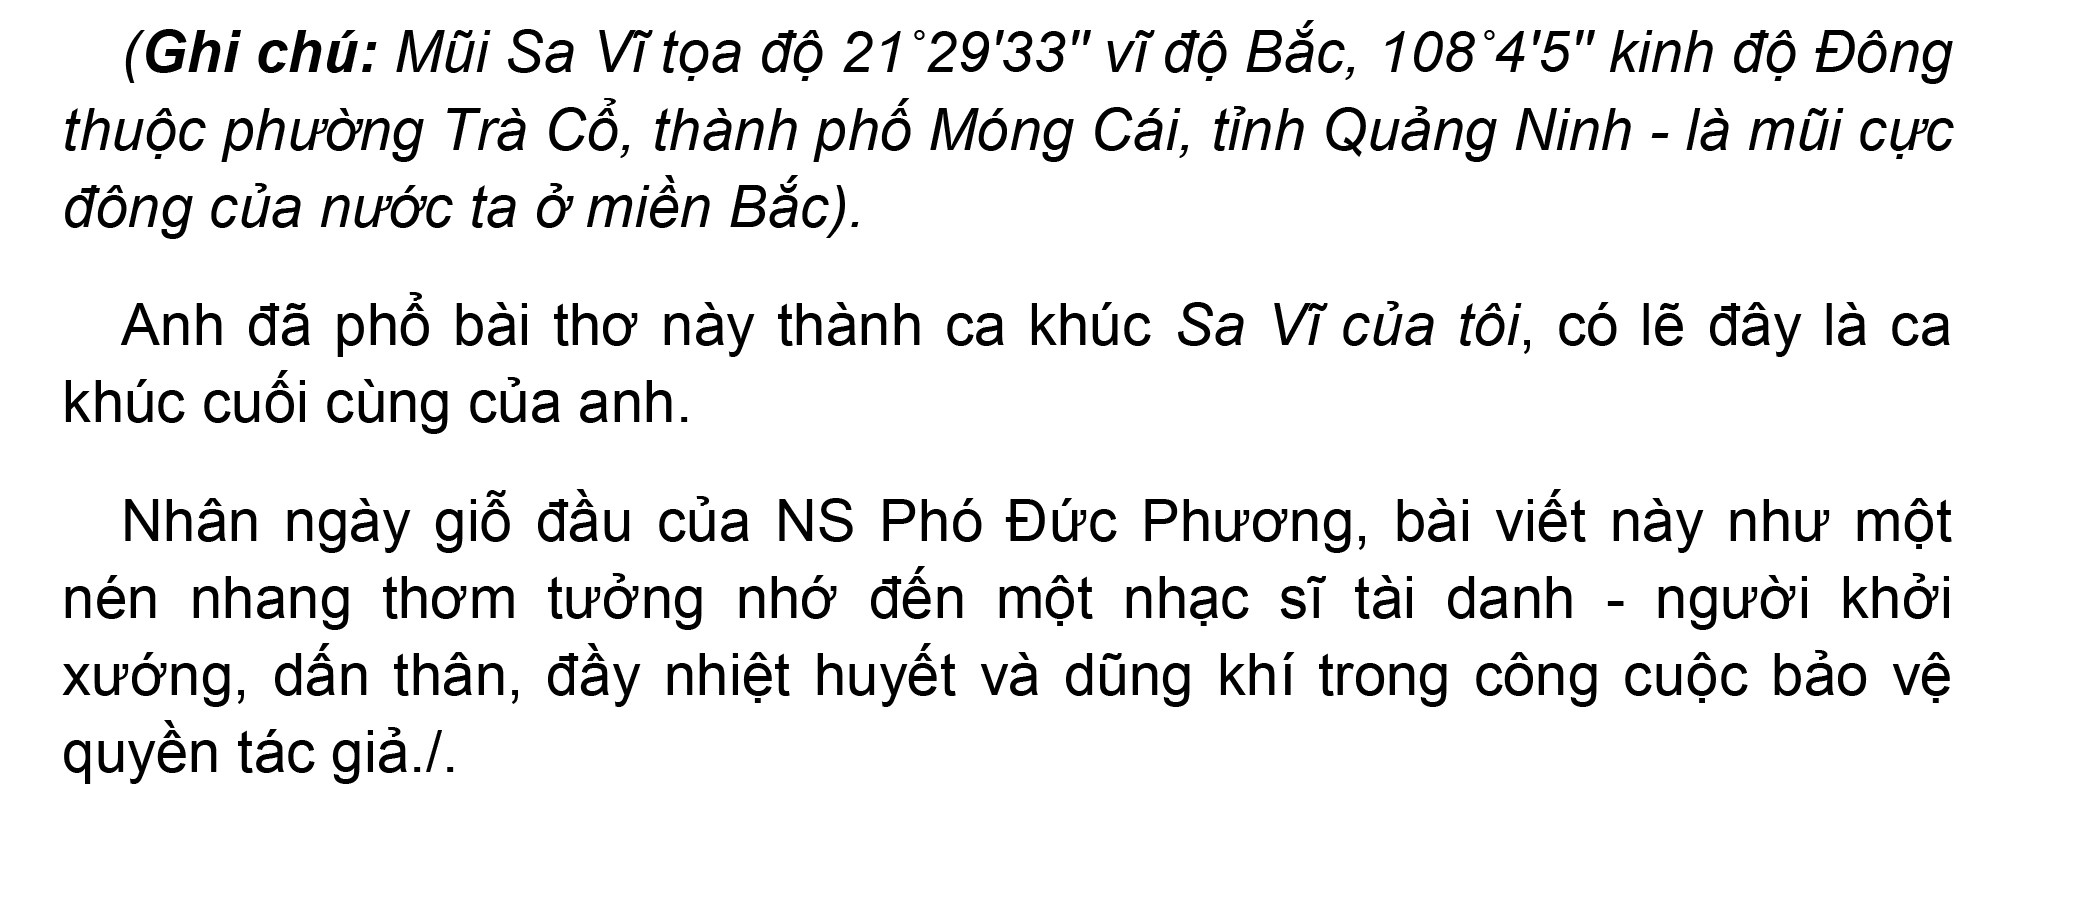 pho-duc-phuong-8-1630978135.jpg